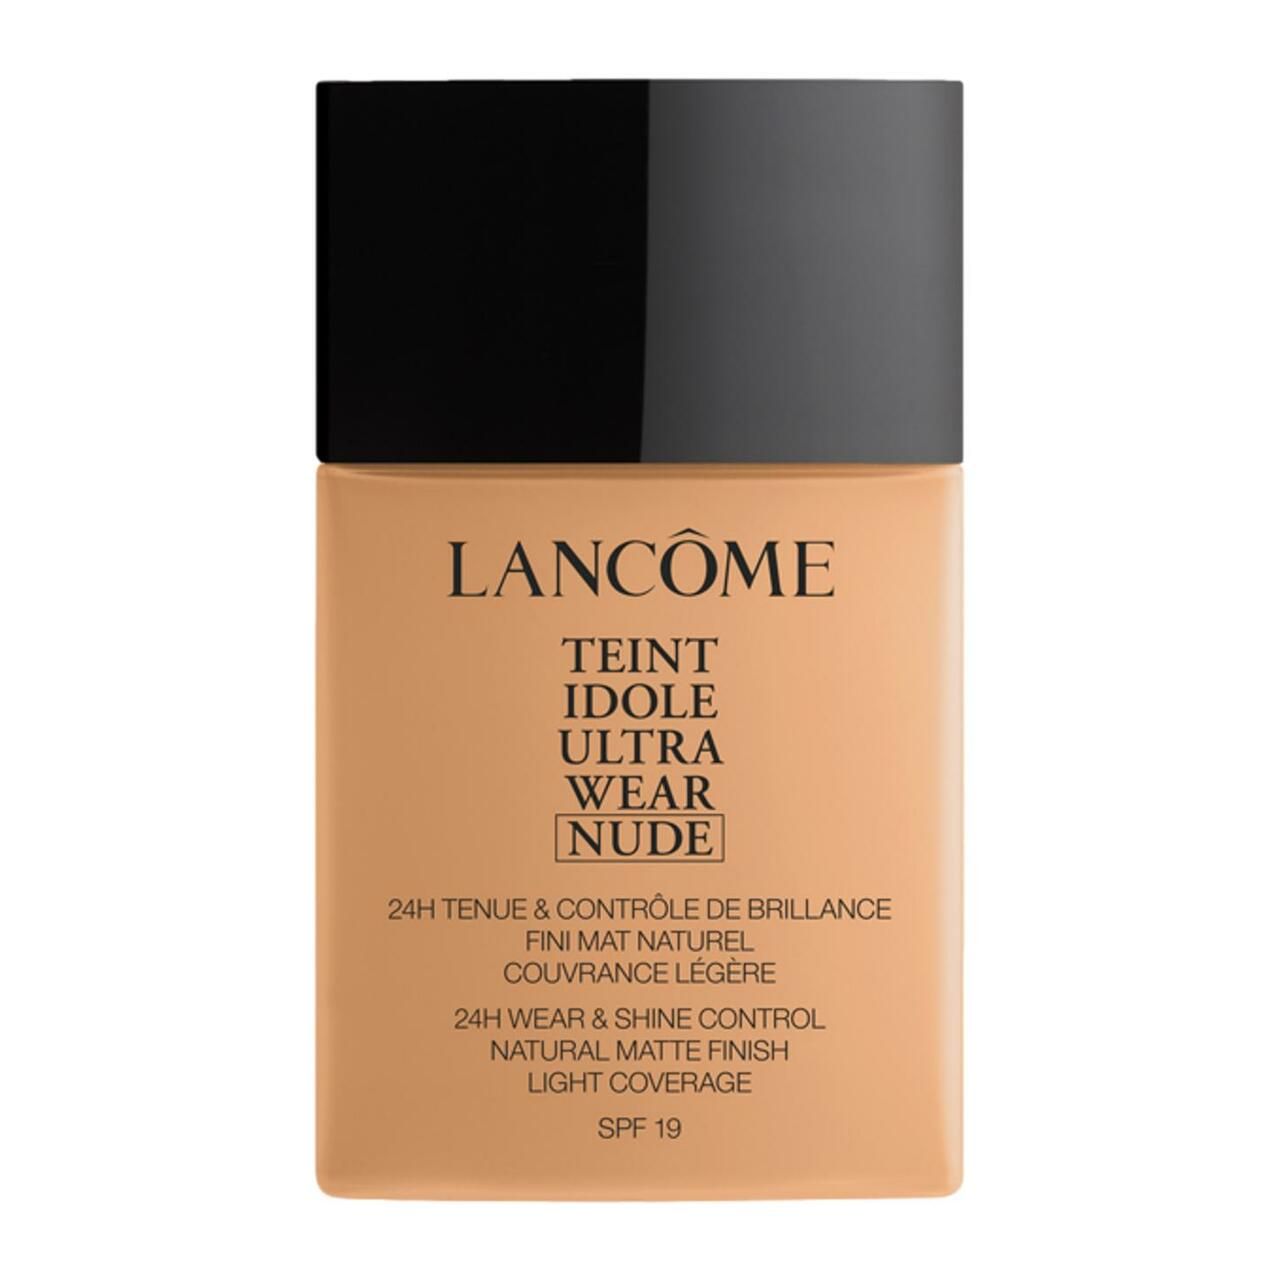 Lancôme, Teint Idole Ultra Wear Nude